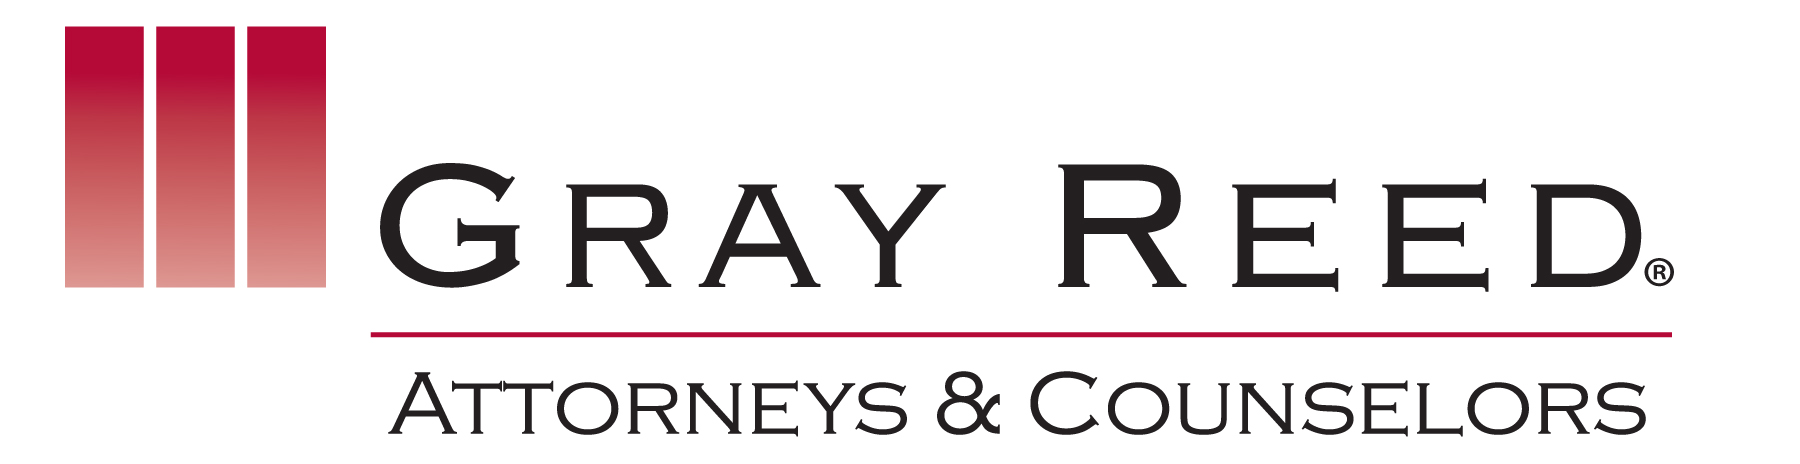 Gray Reed logo